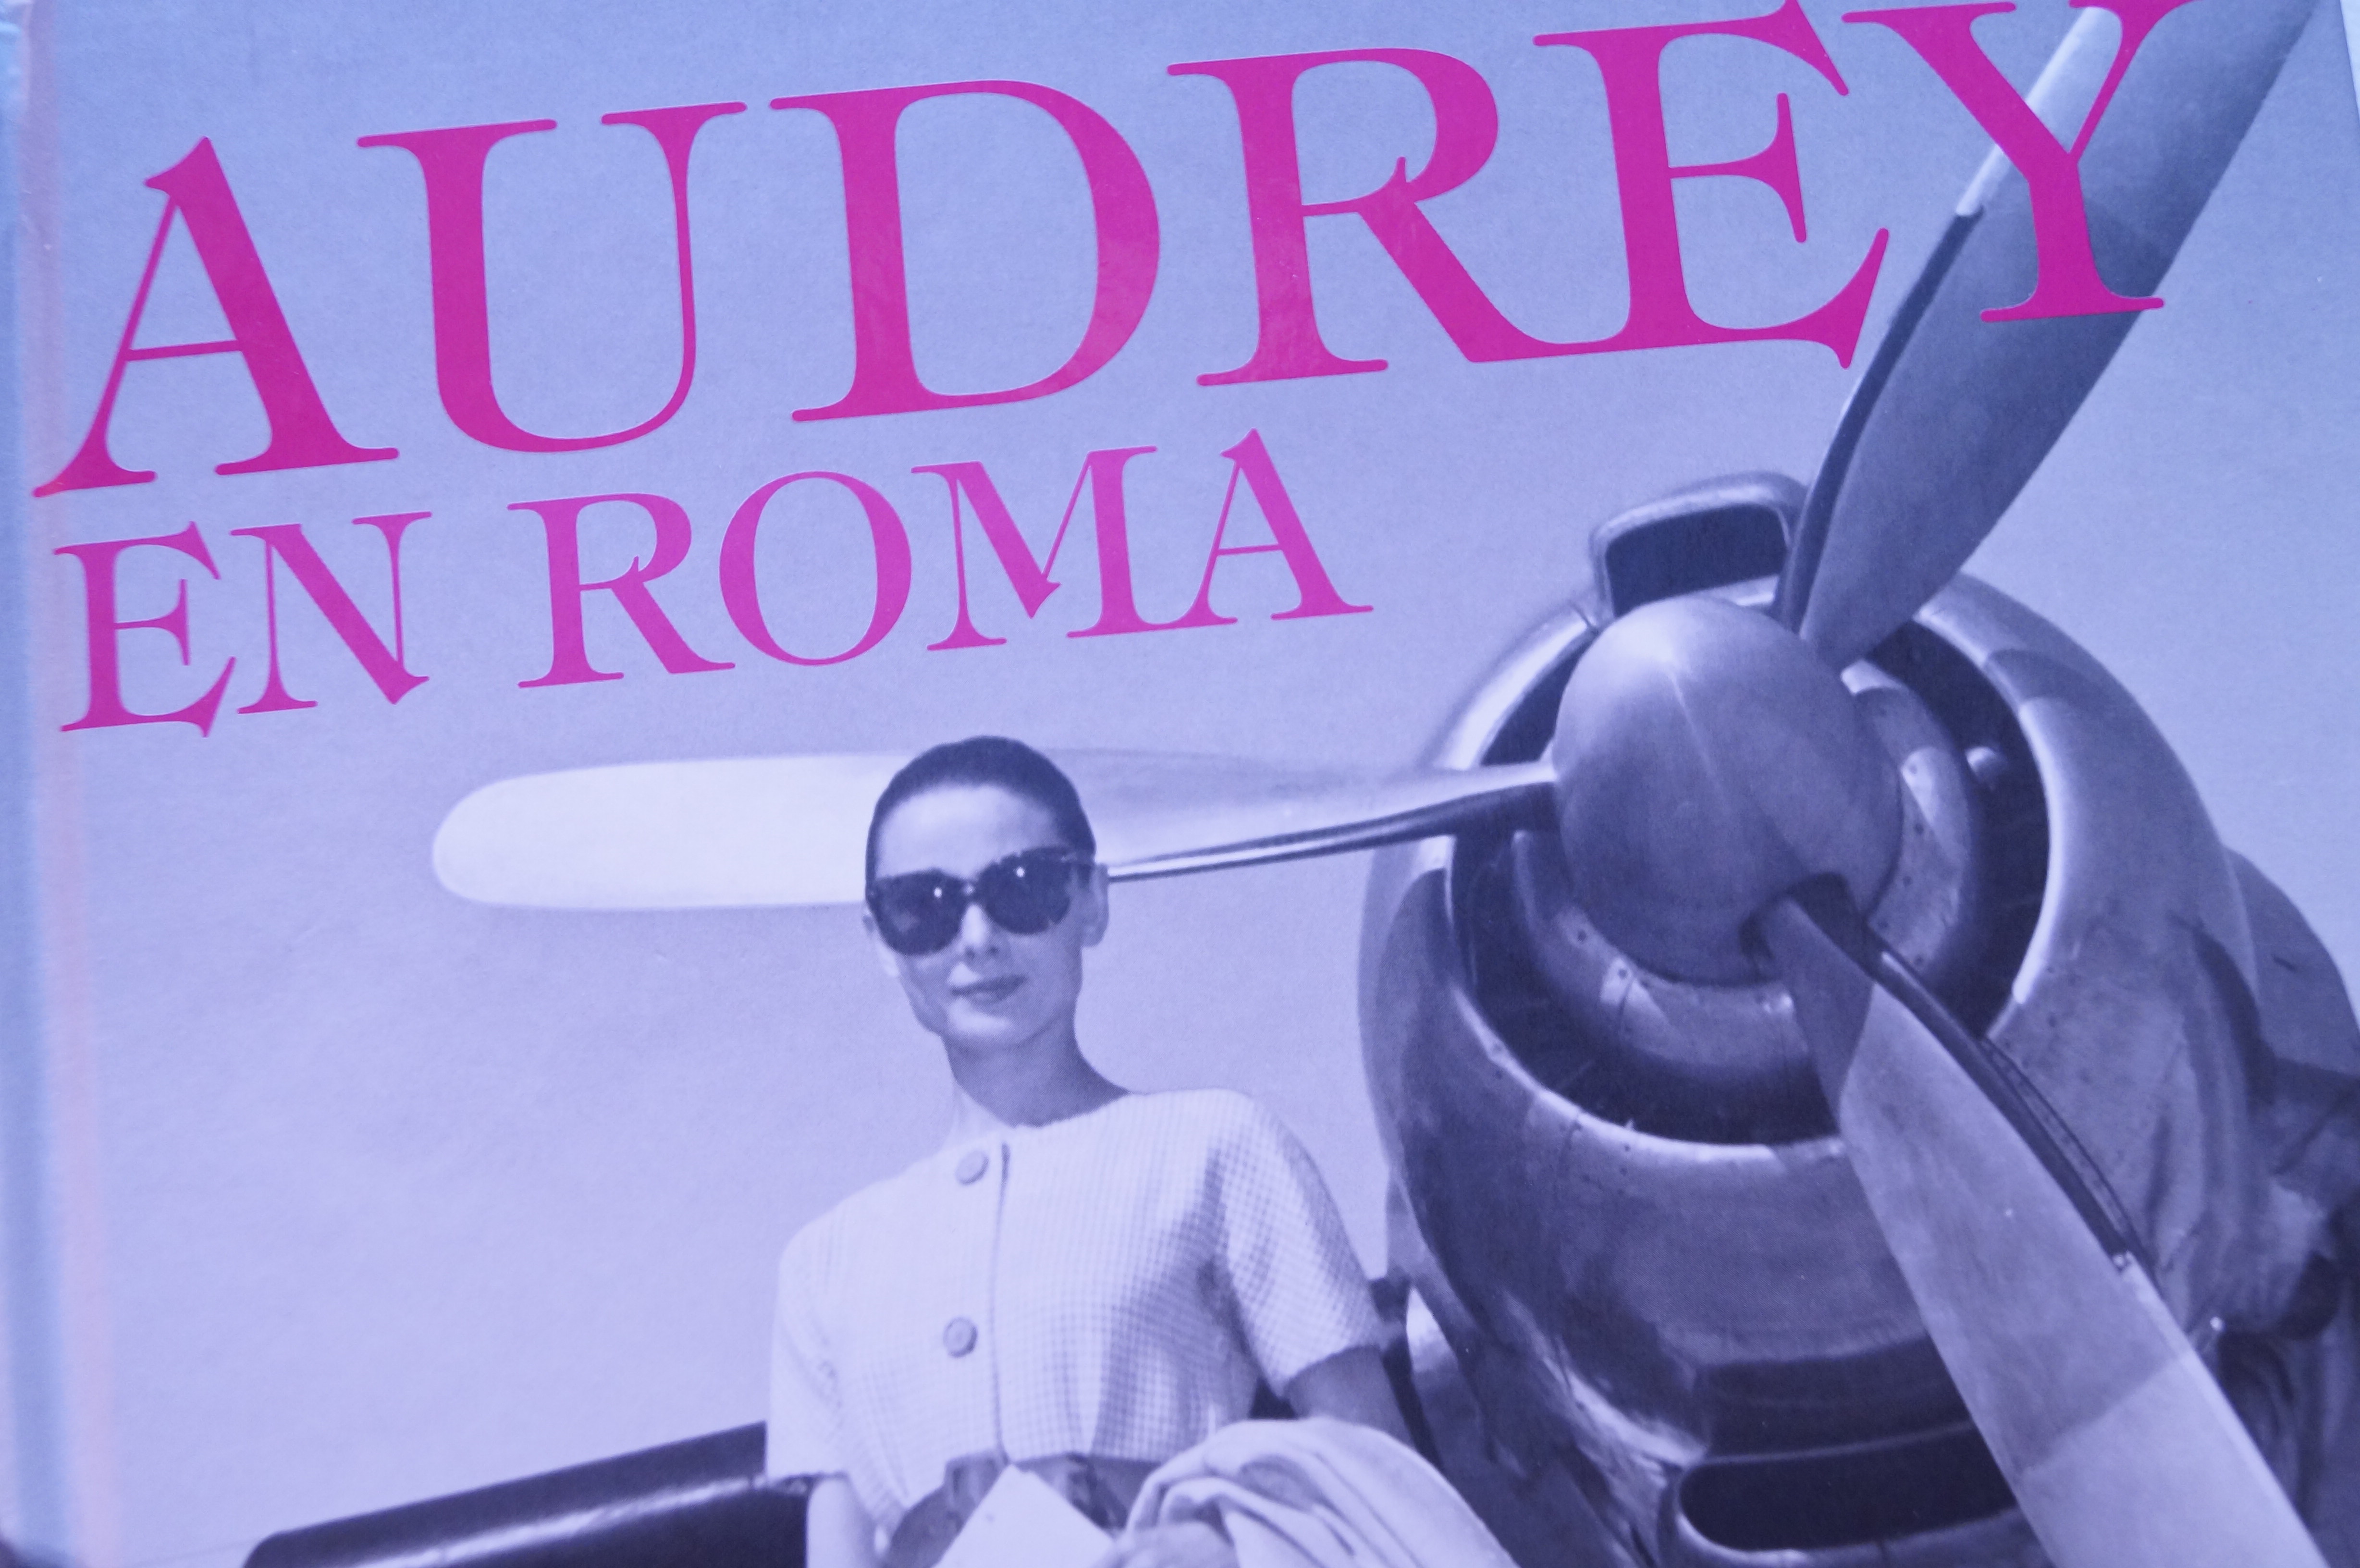 Audrey en Roma: el libro/ Audrey in Rome: the book